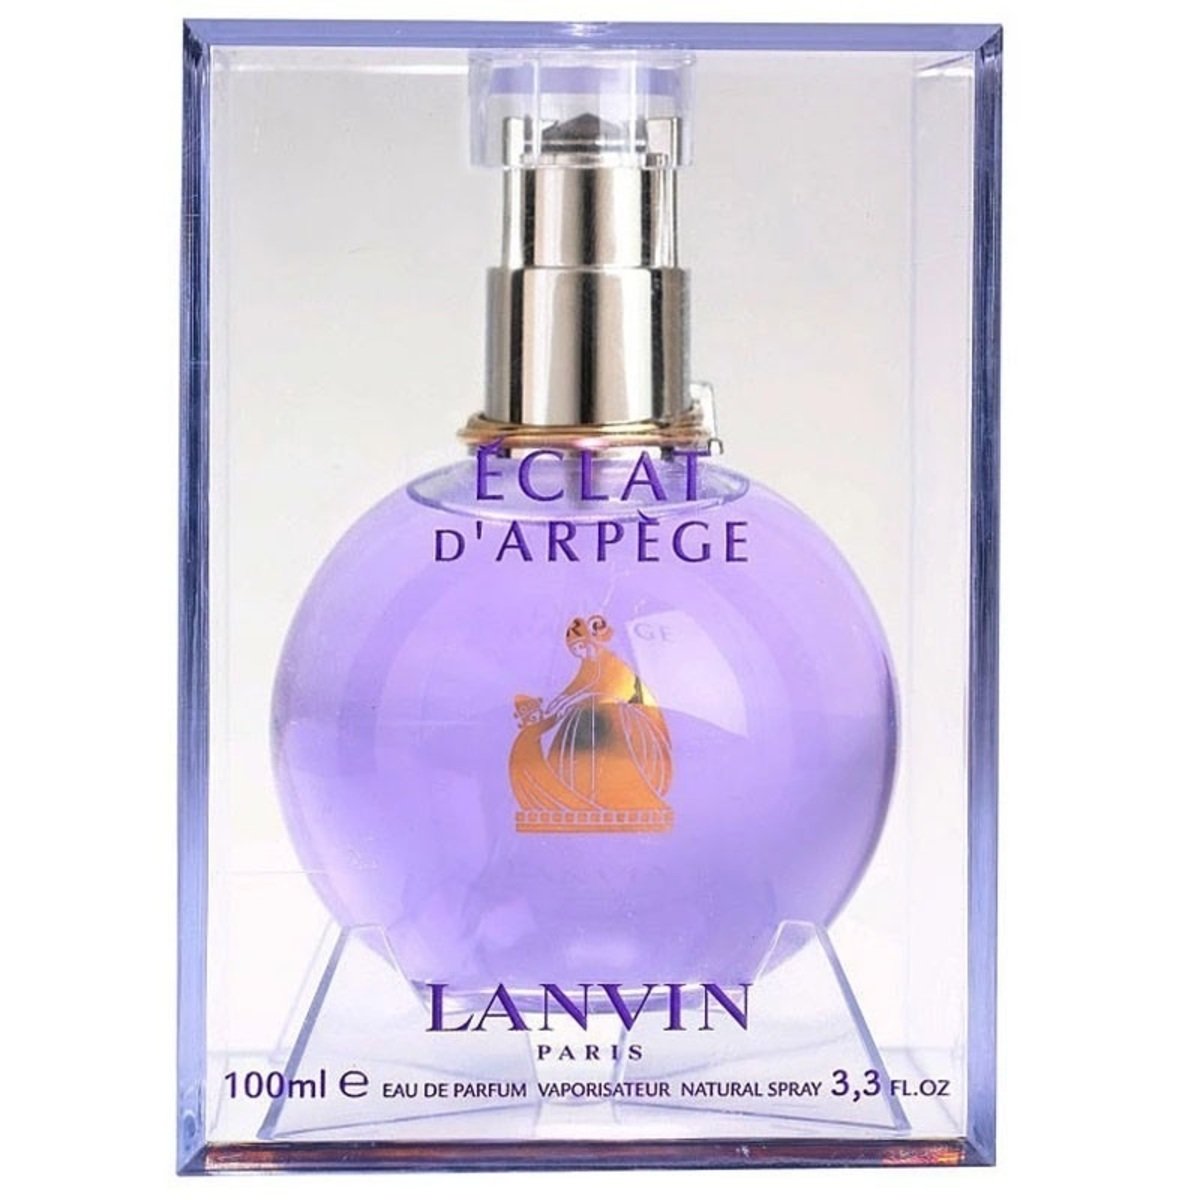 LANVIN Eclat d'Arpège Eau de Parfum - Reviews